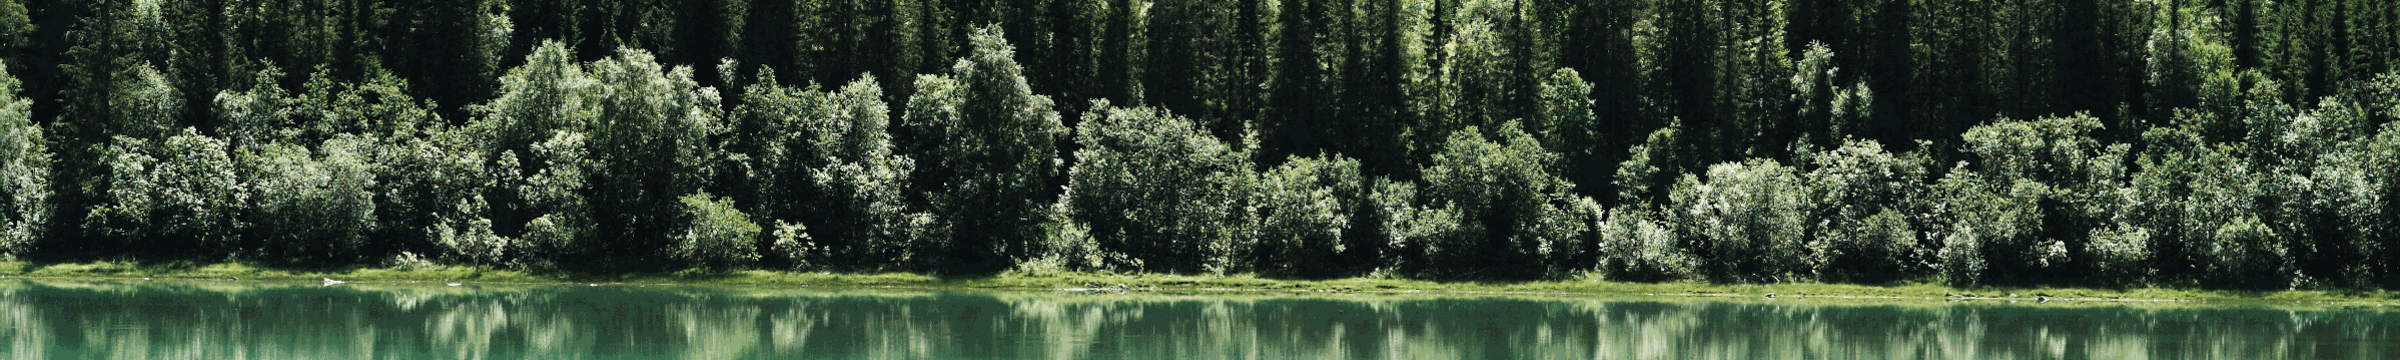 Bosque reflejándose en lecho del rio